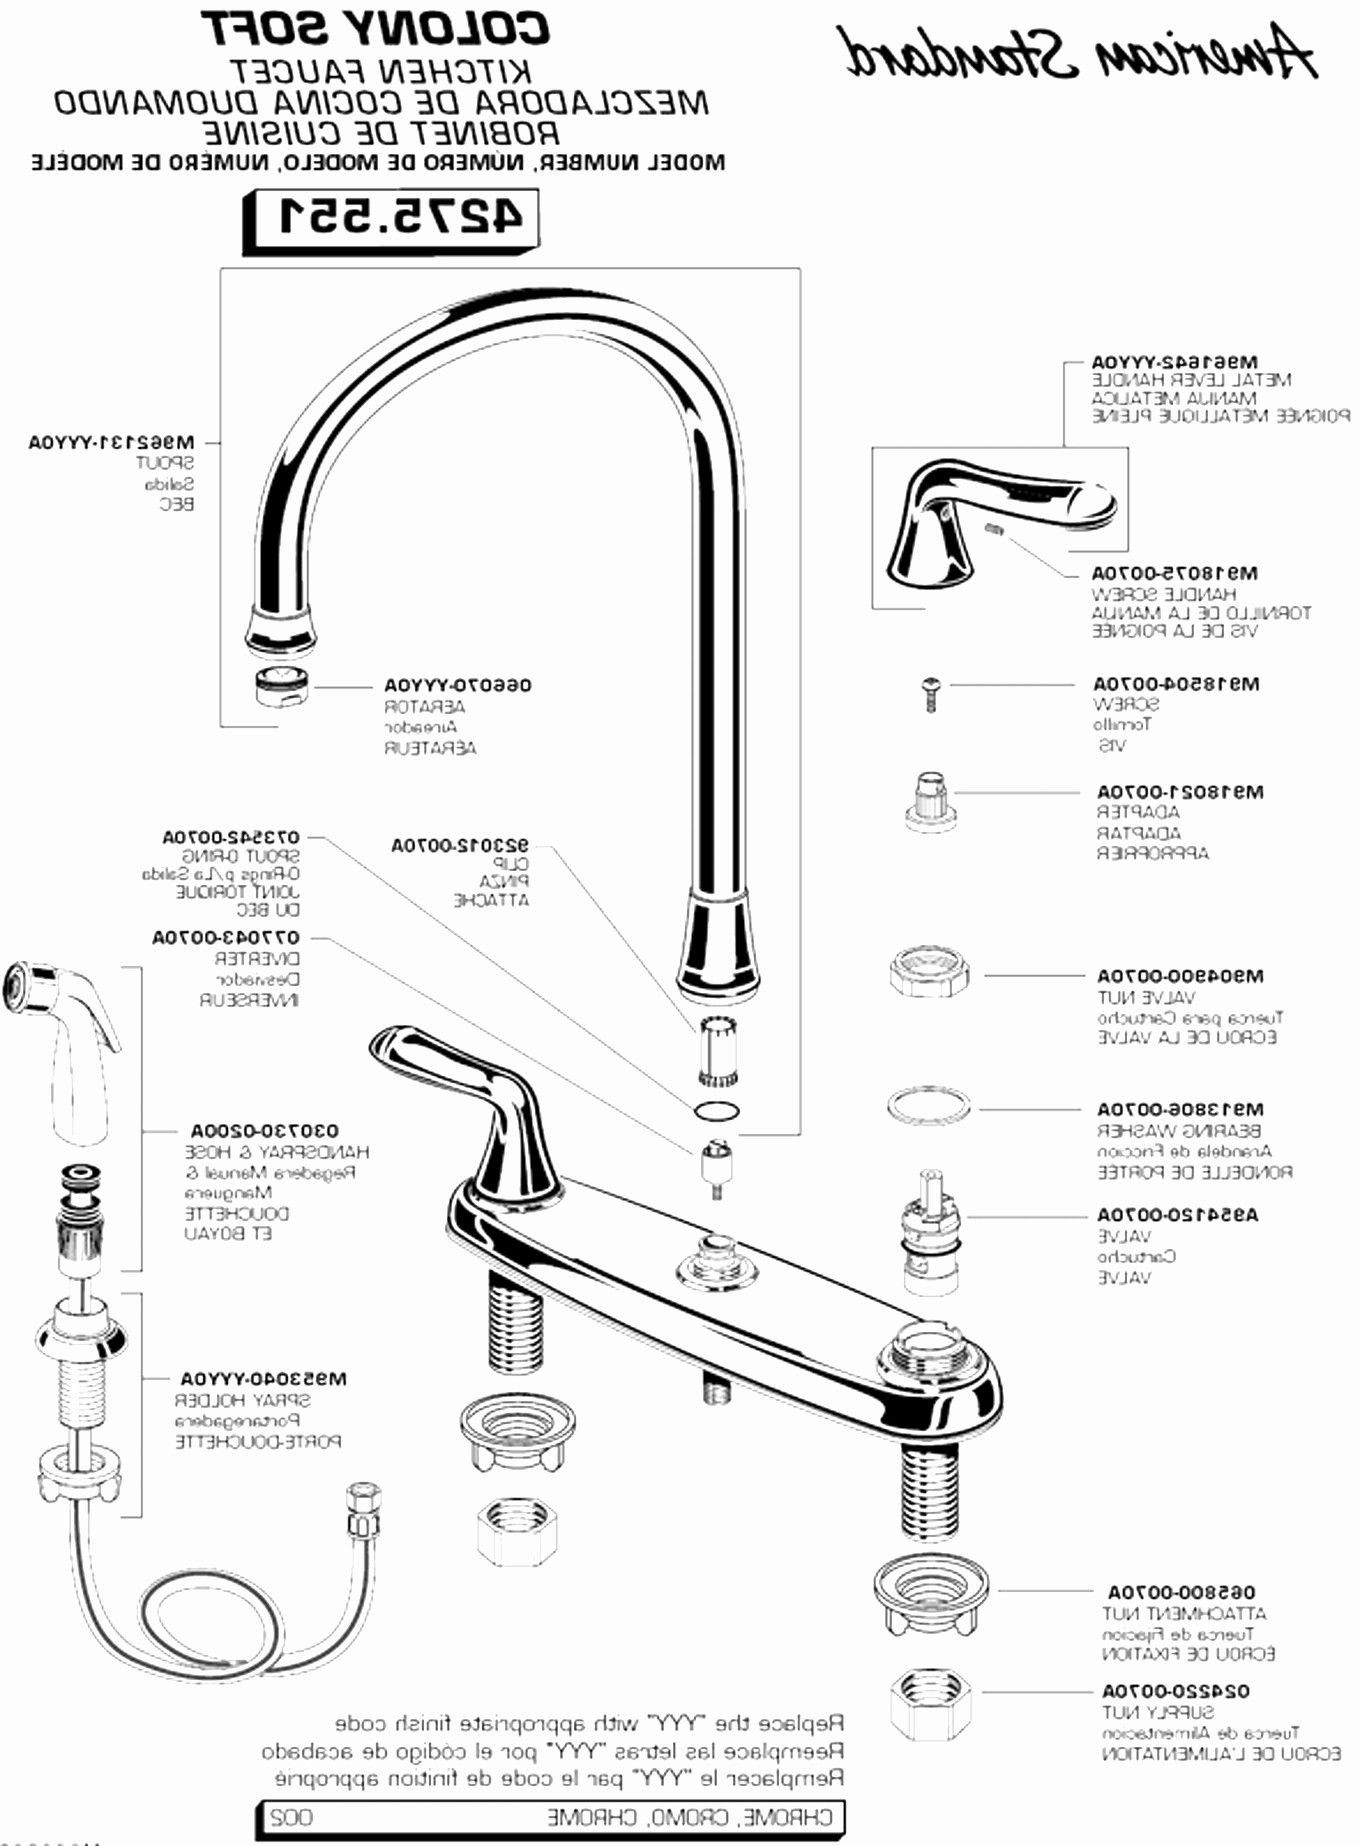 American Standard Shower Faucet Parts Diagram American Standard Kitchen Sink Awesome Kitchen Sink Faucet Parts Of American Standard Shower Faucet Parts Diagram